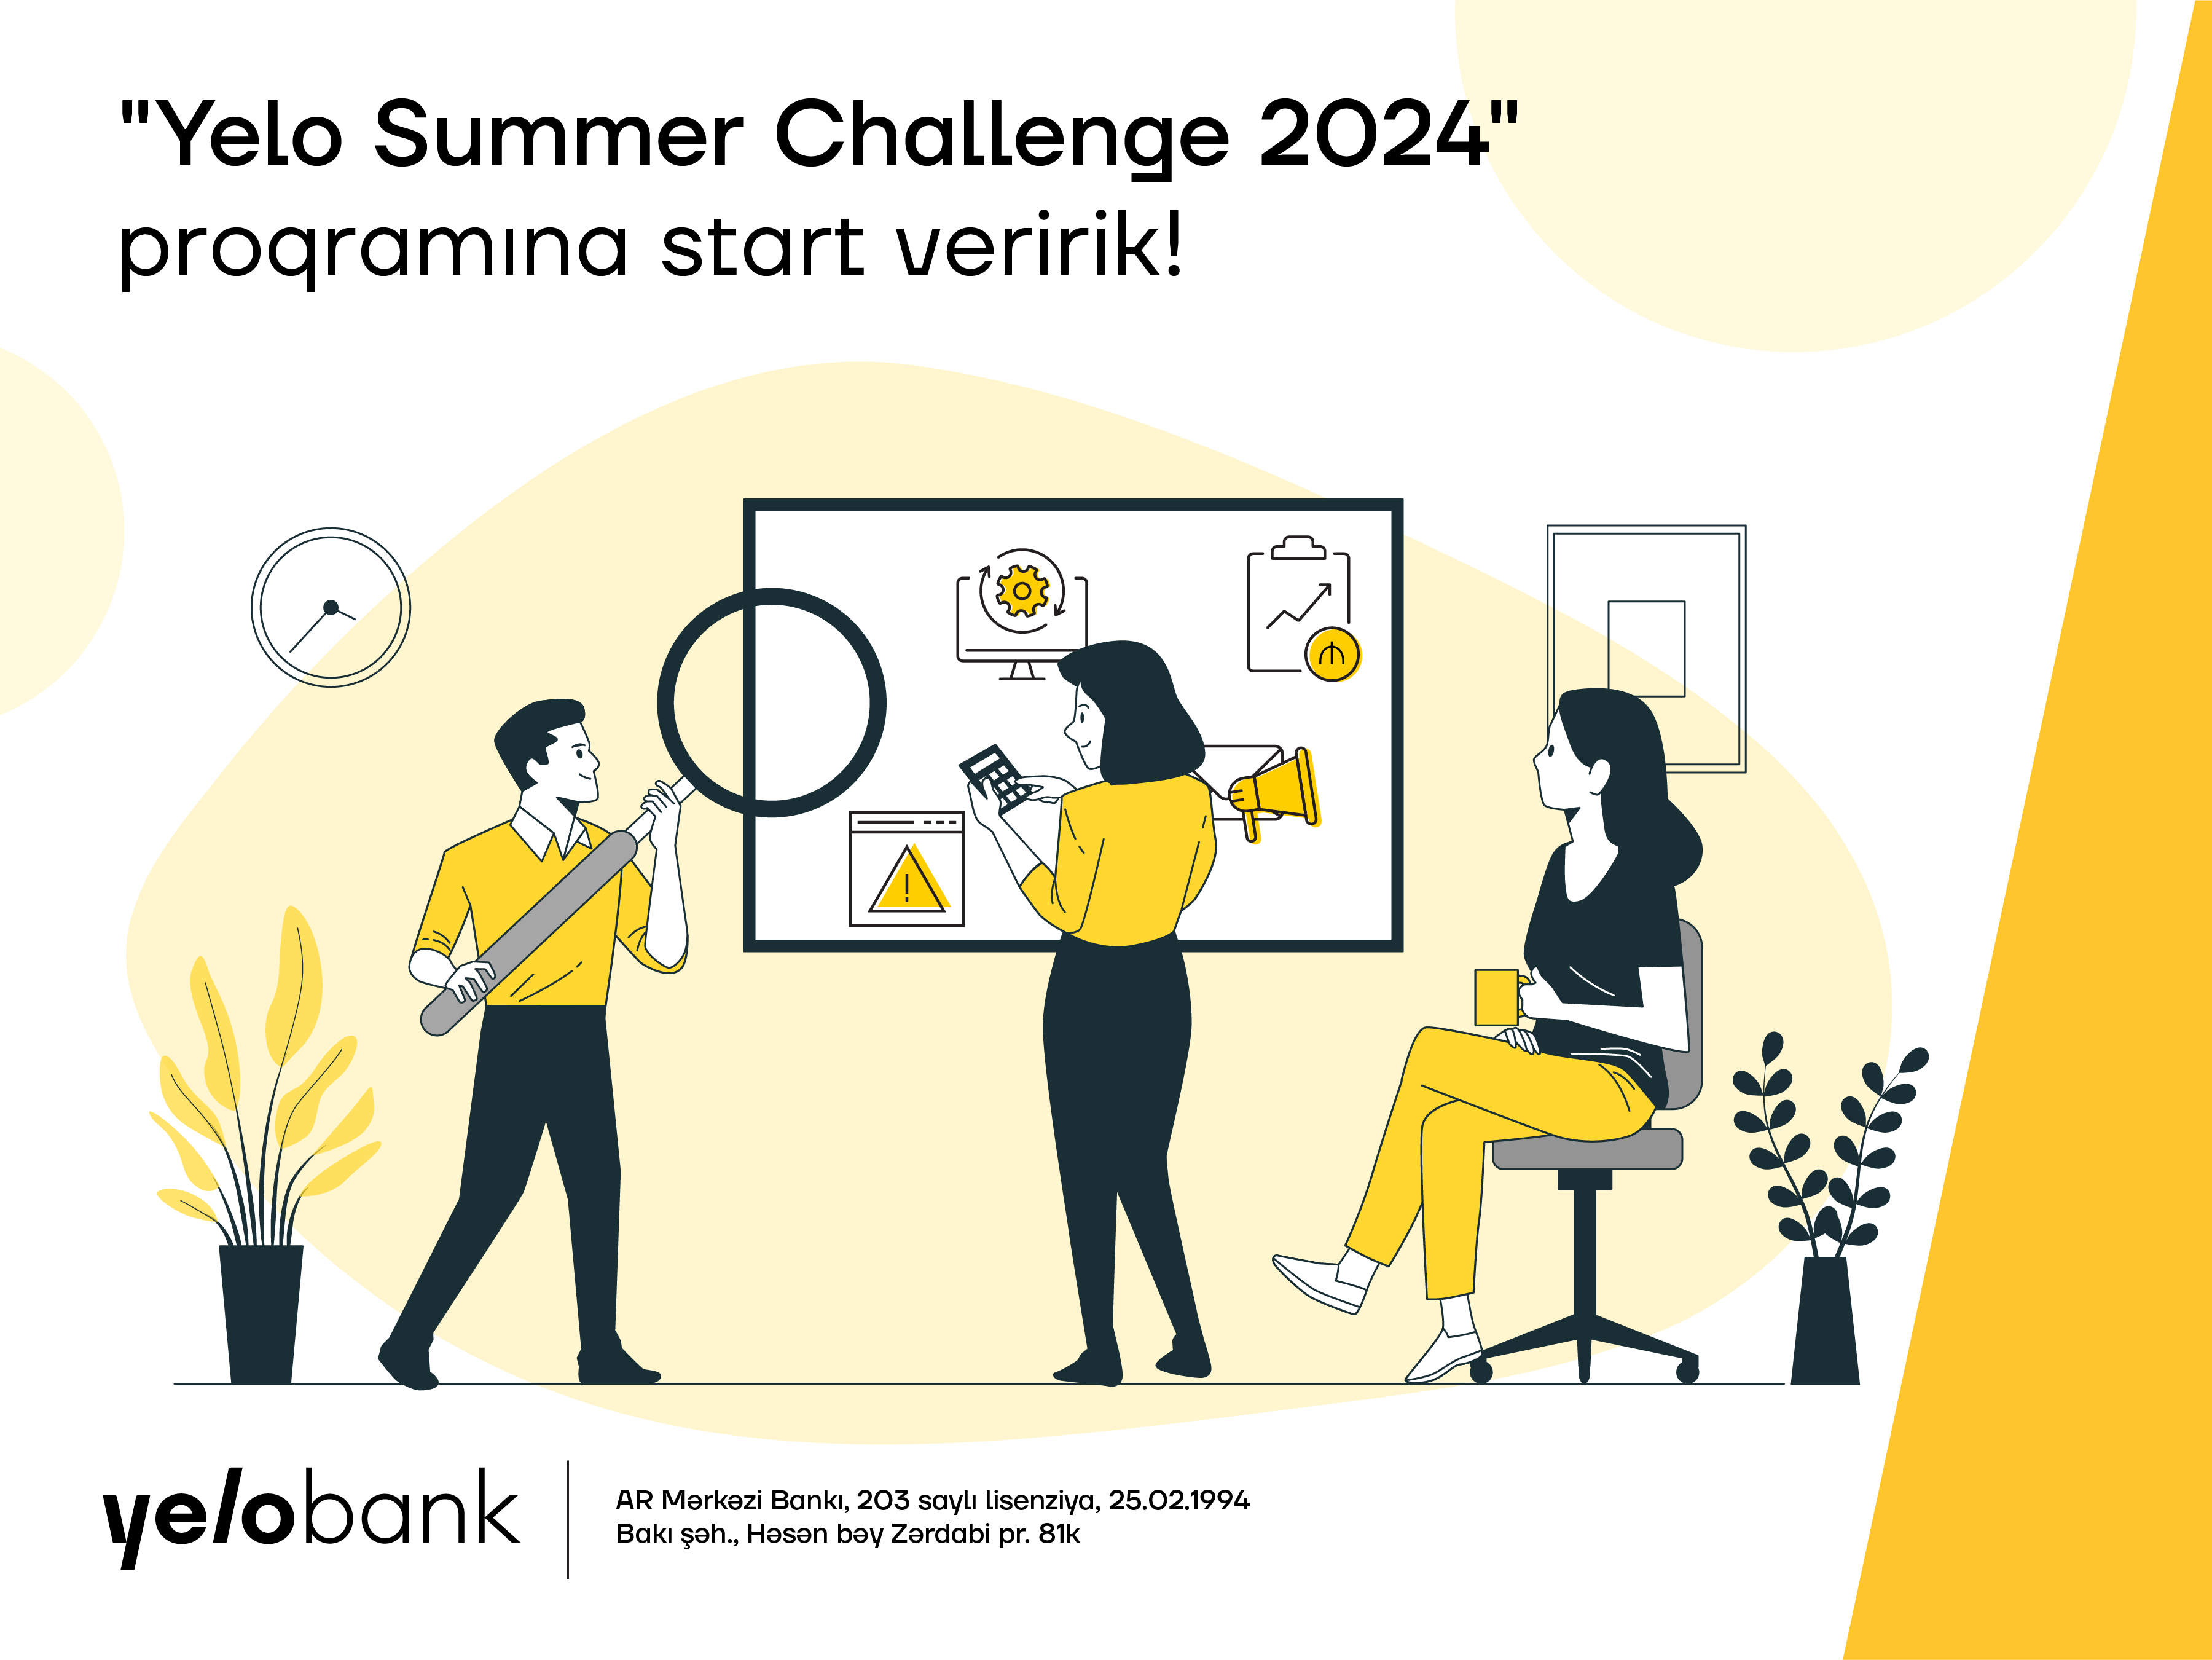 “Yelo Bank” “Summer Challenge 2024” təcrübə proqramını elan edir